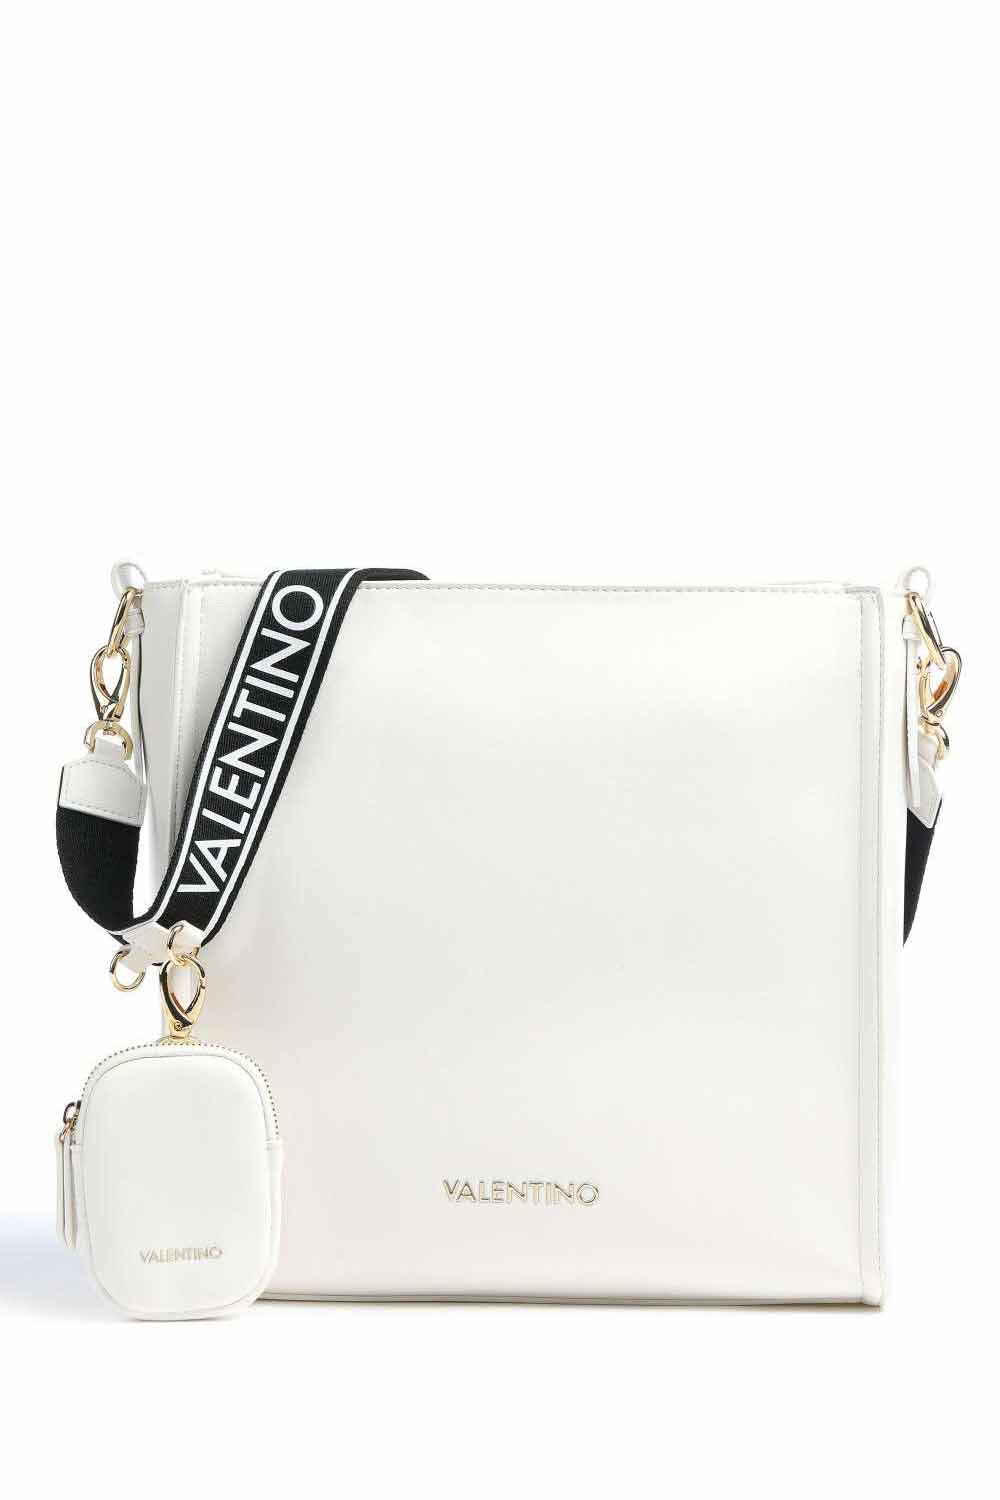 Bolso en color blanco para mujer, Valentino Bags